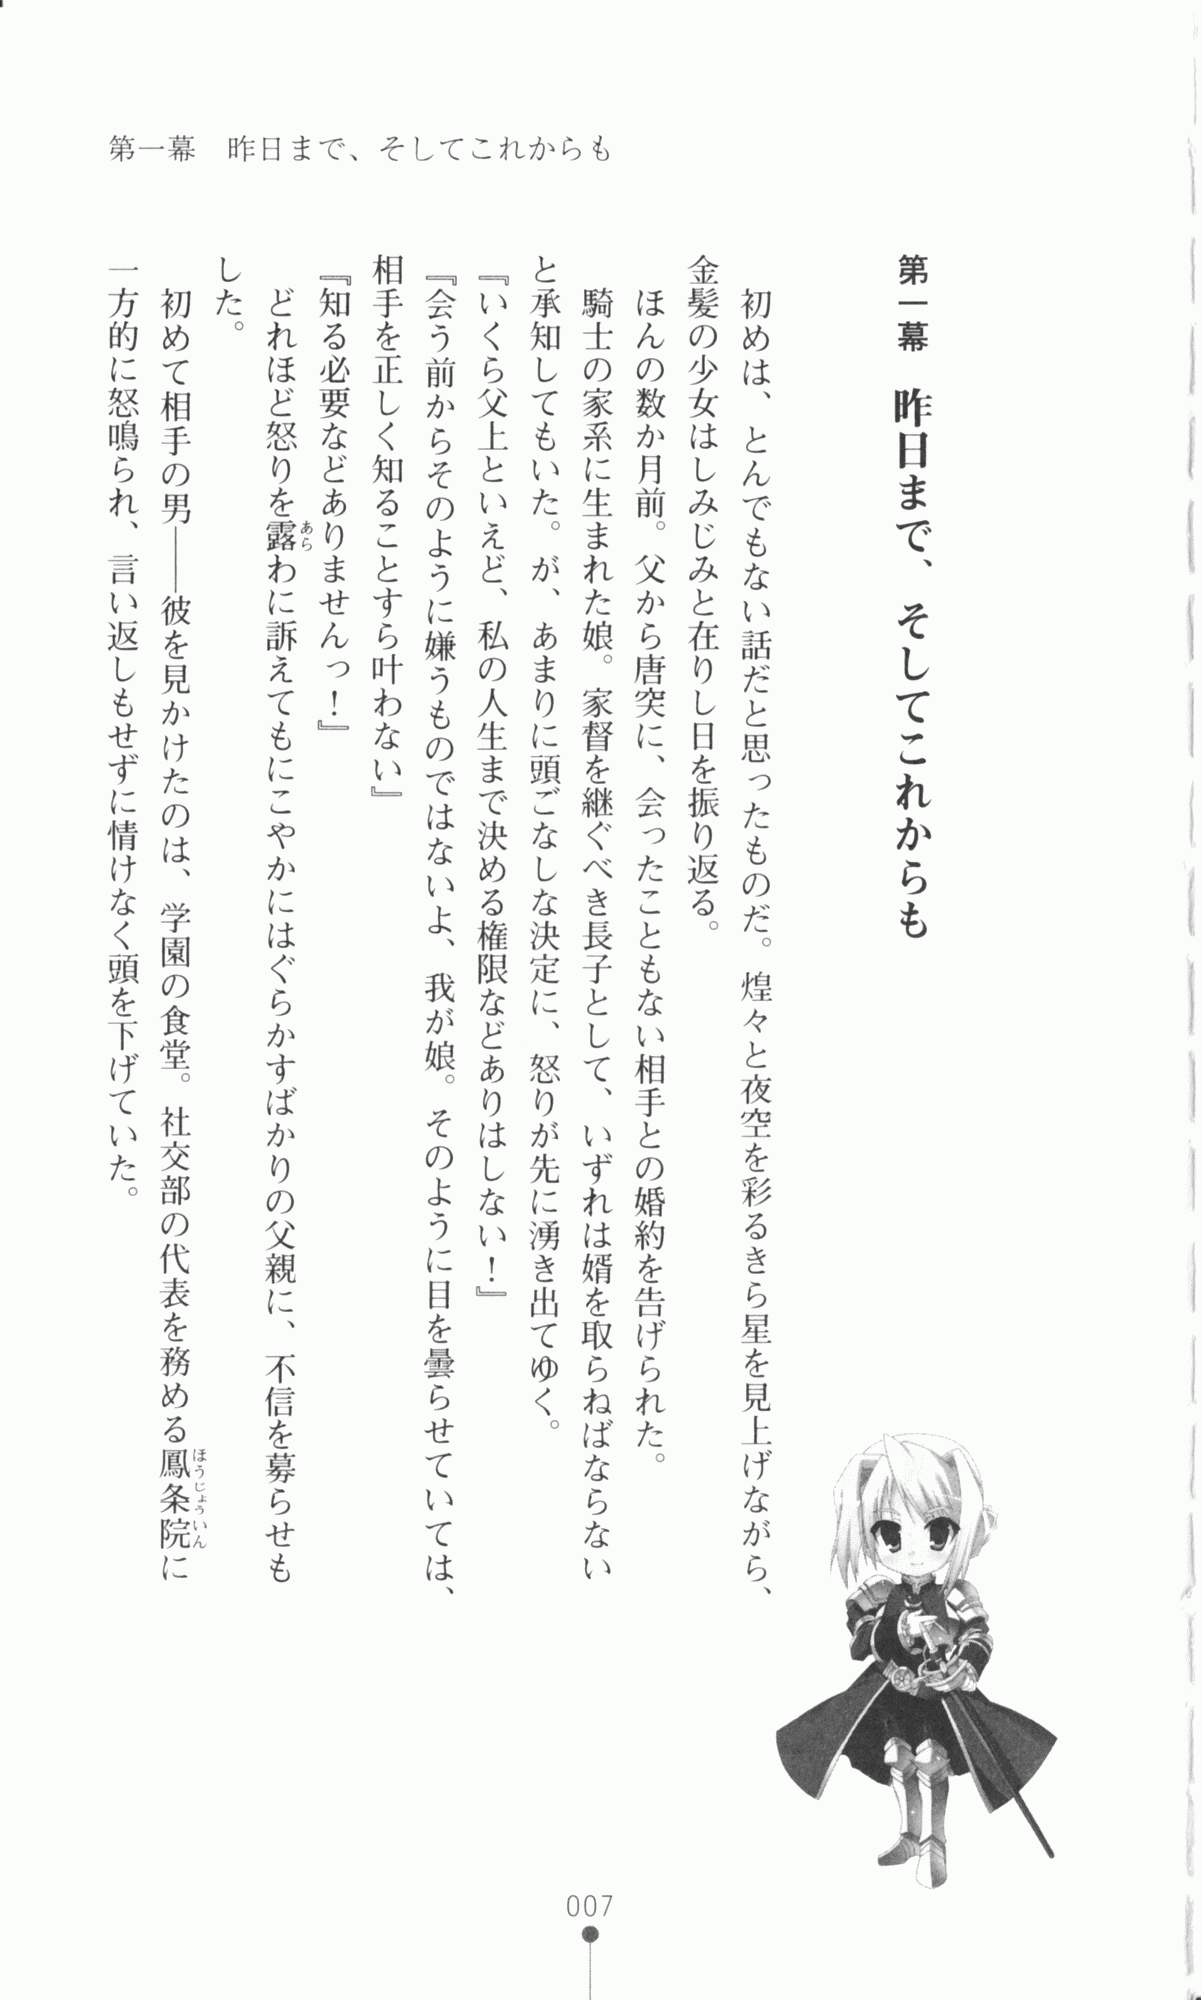 [Utsusemi × Yoshi Hyuma, Komori Kei] Princess Lover! Sylvia van Hossen no Koiji 2 (Original by Ricotta) 30